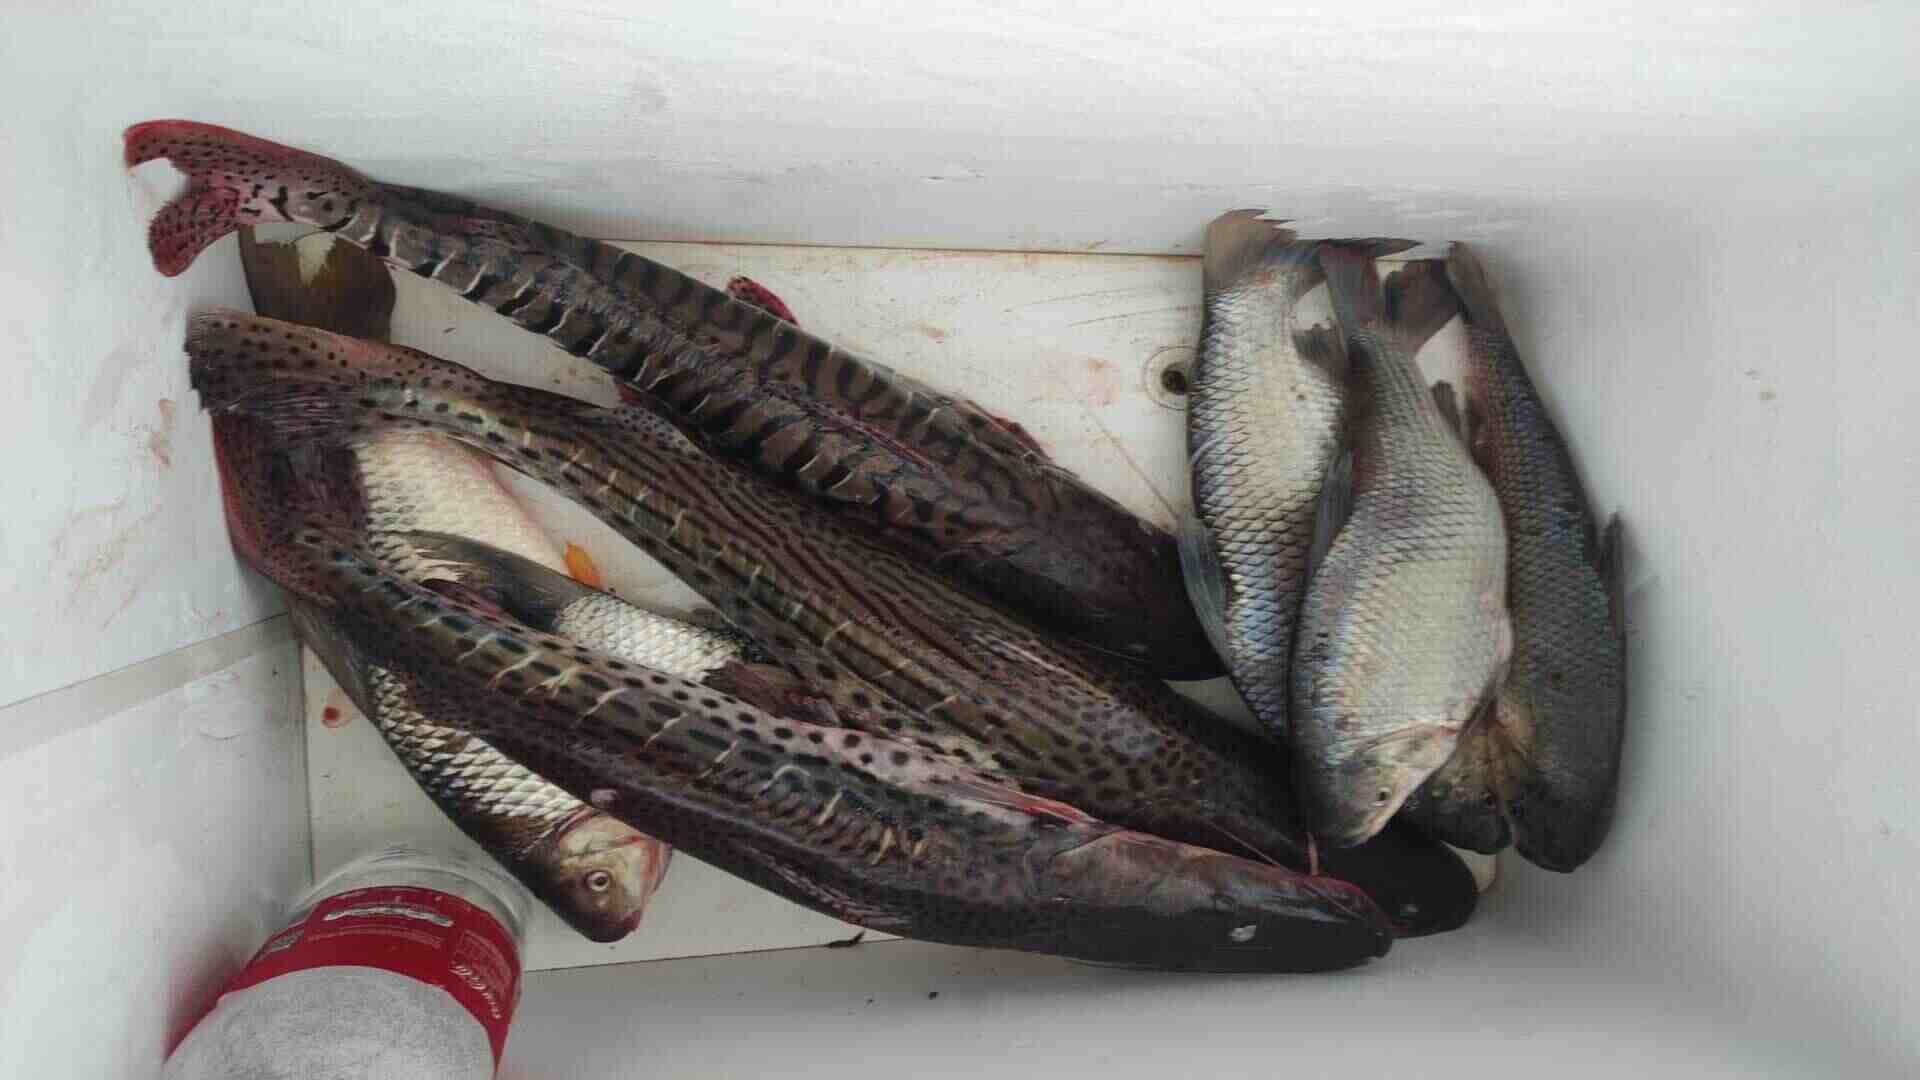 Pescadores são presos e multados em R$ 3,3 mil por pesca ilegal durante piracema, em Maracaju